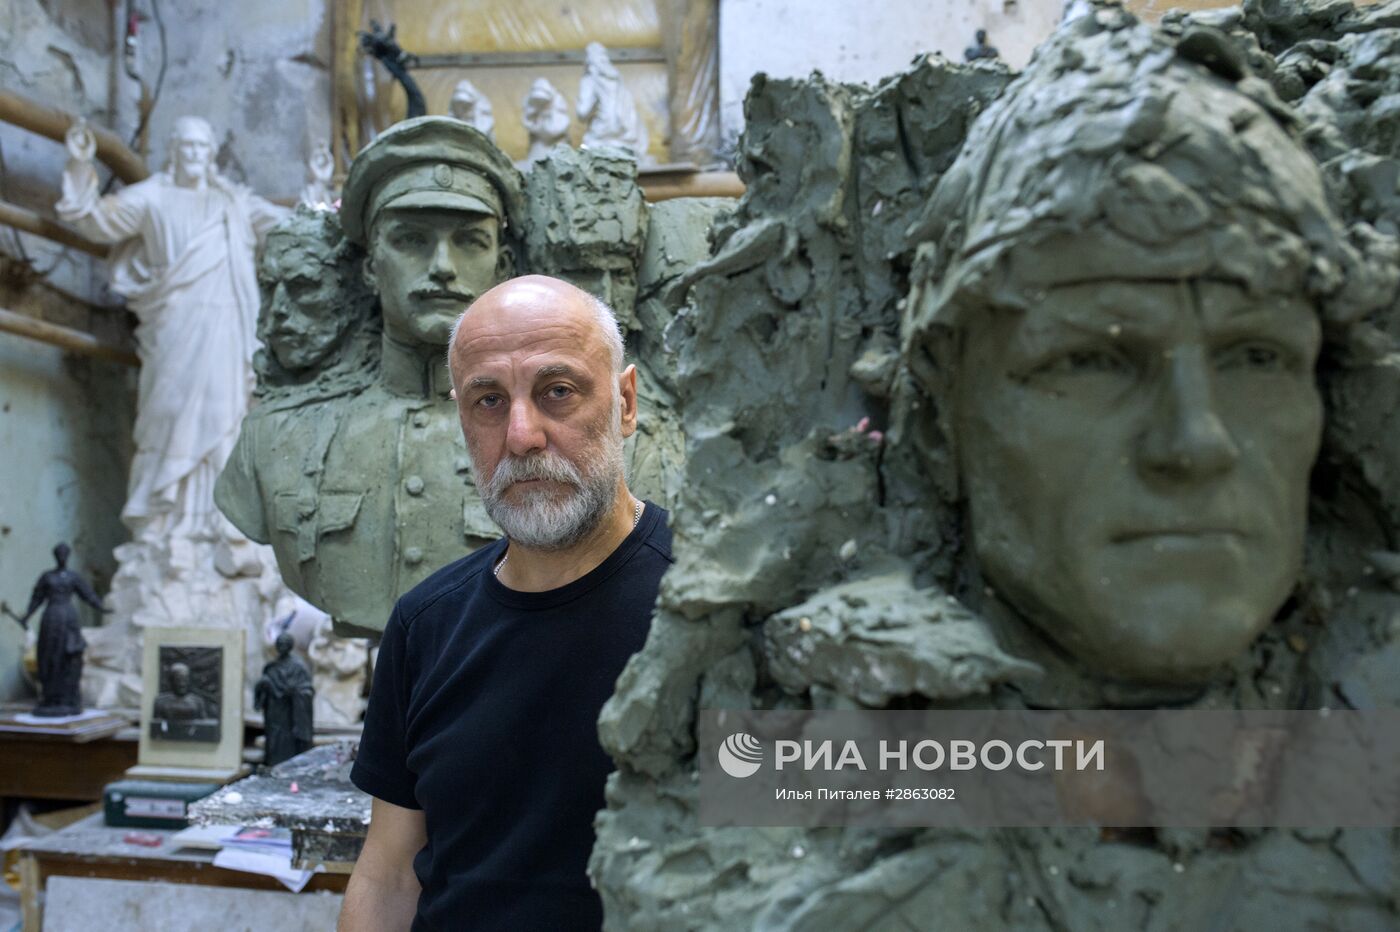 Скульптор Салават Щербаков, автор памятника "Вежливым людям" в Симферополе